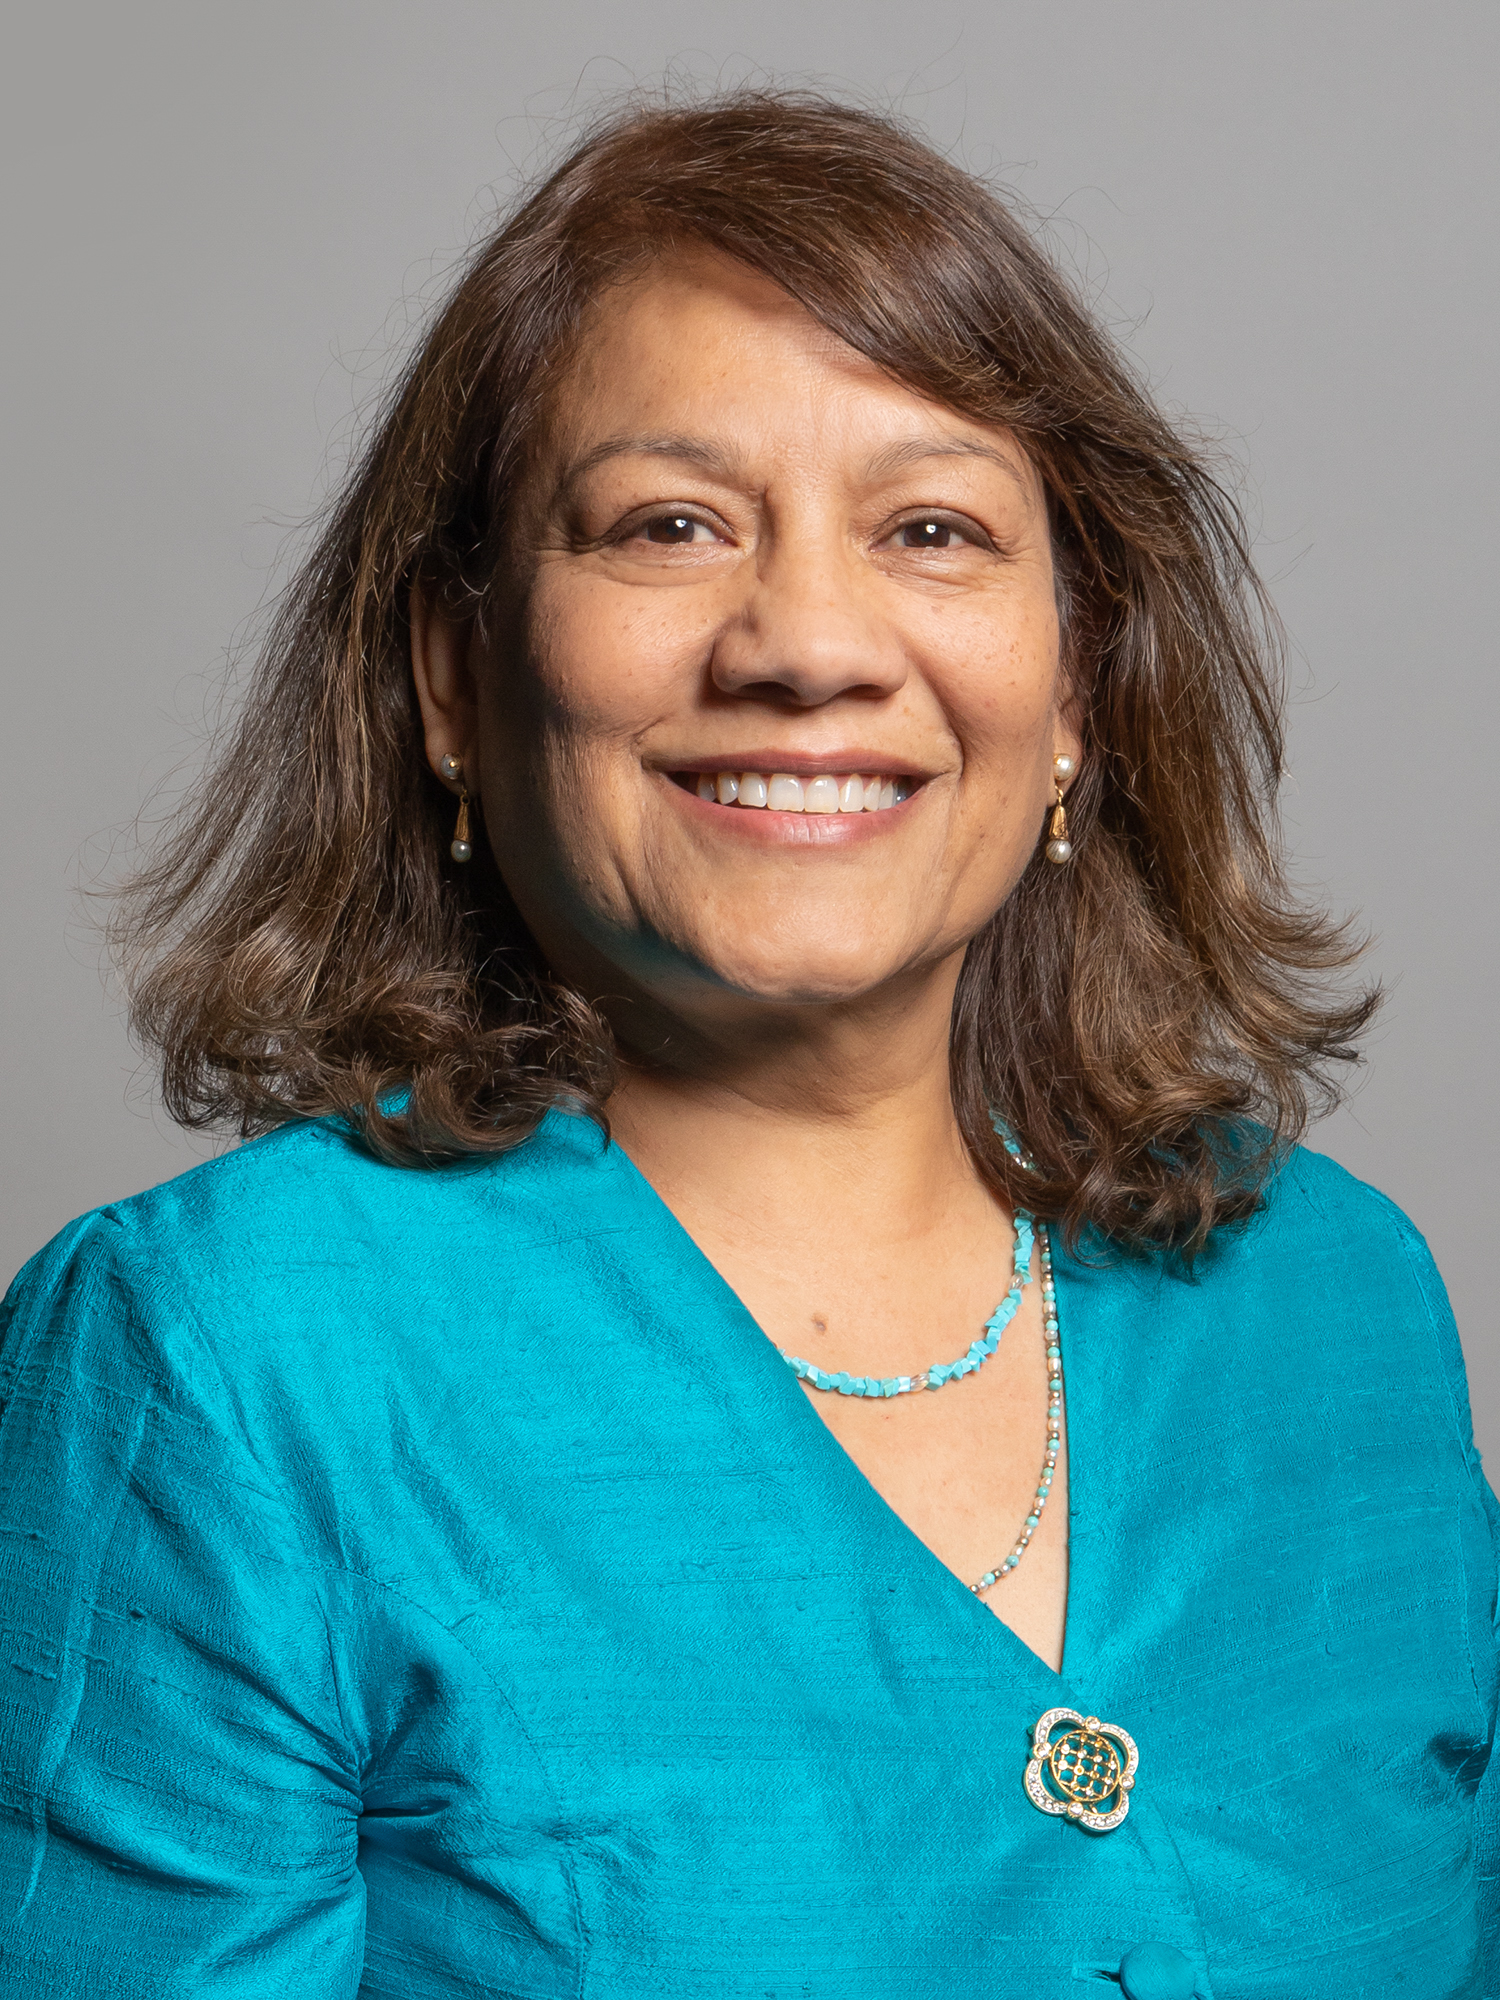 Valerie Vaz MP, Vice Chair